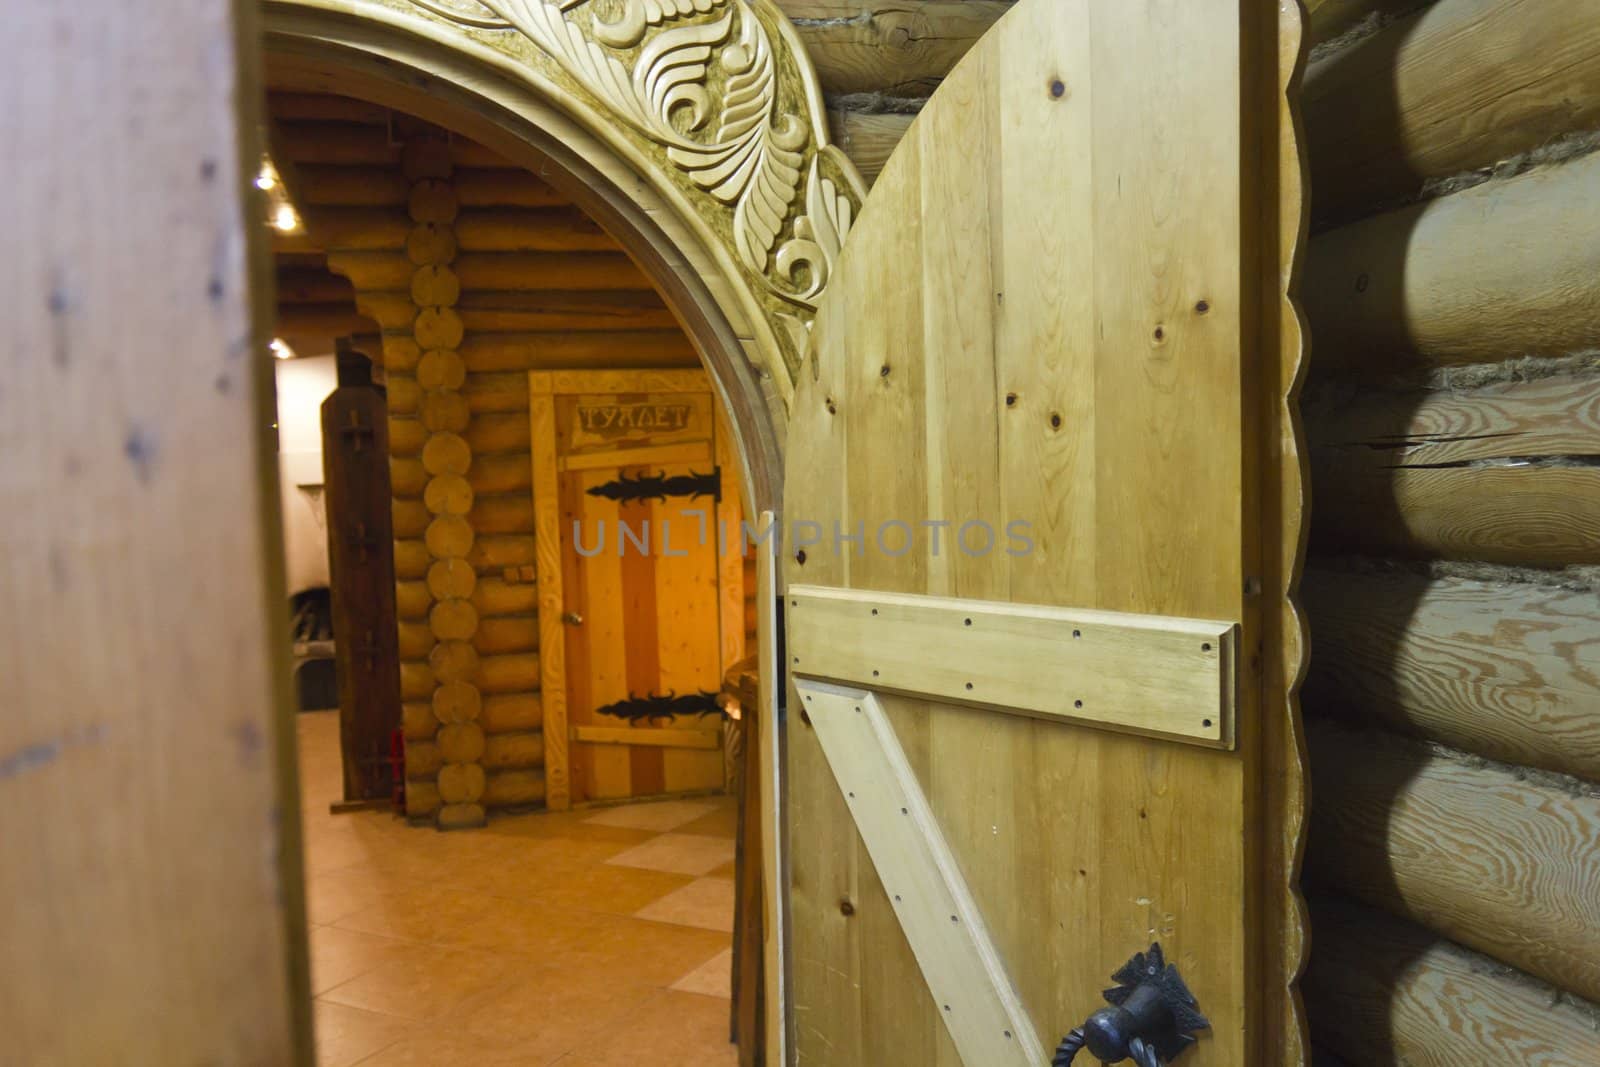 Wooden open door in Russian log hut